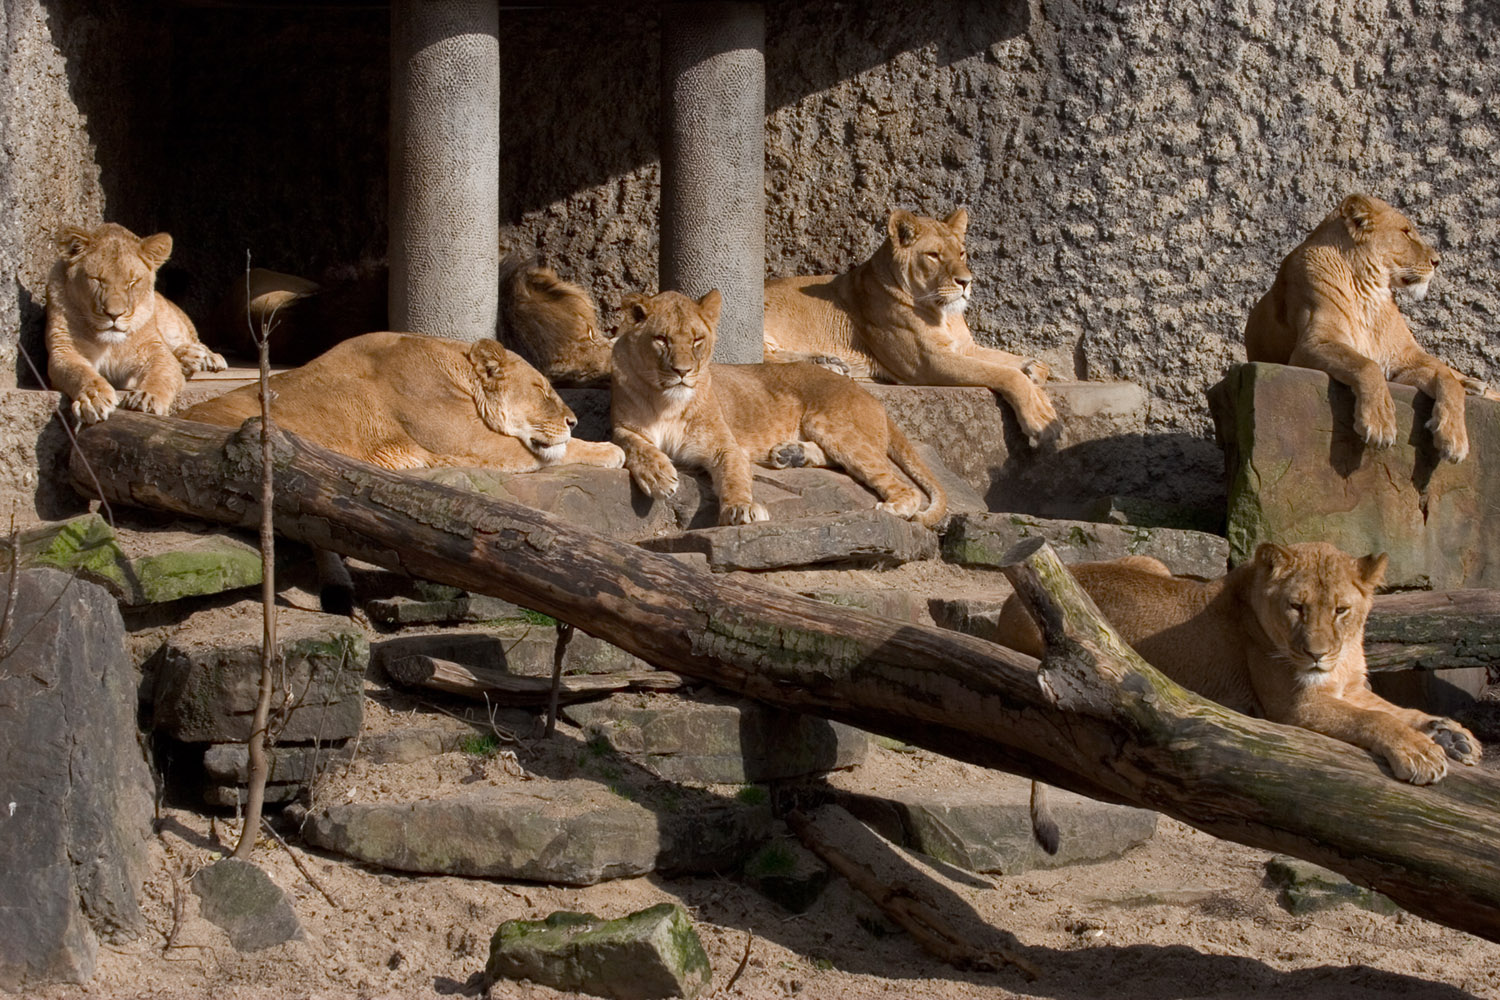 Lions at Artis Royal Amsterdam Zoo